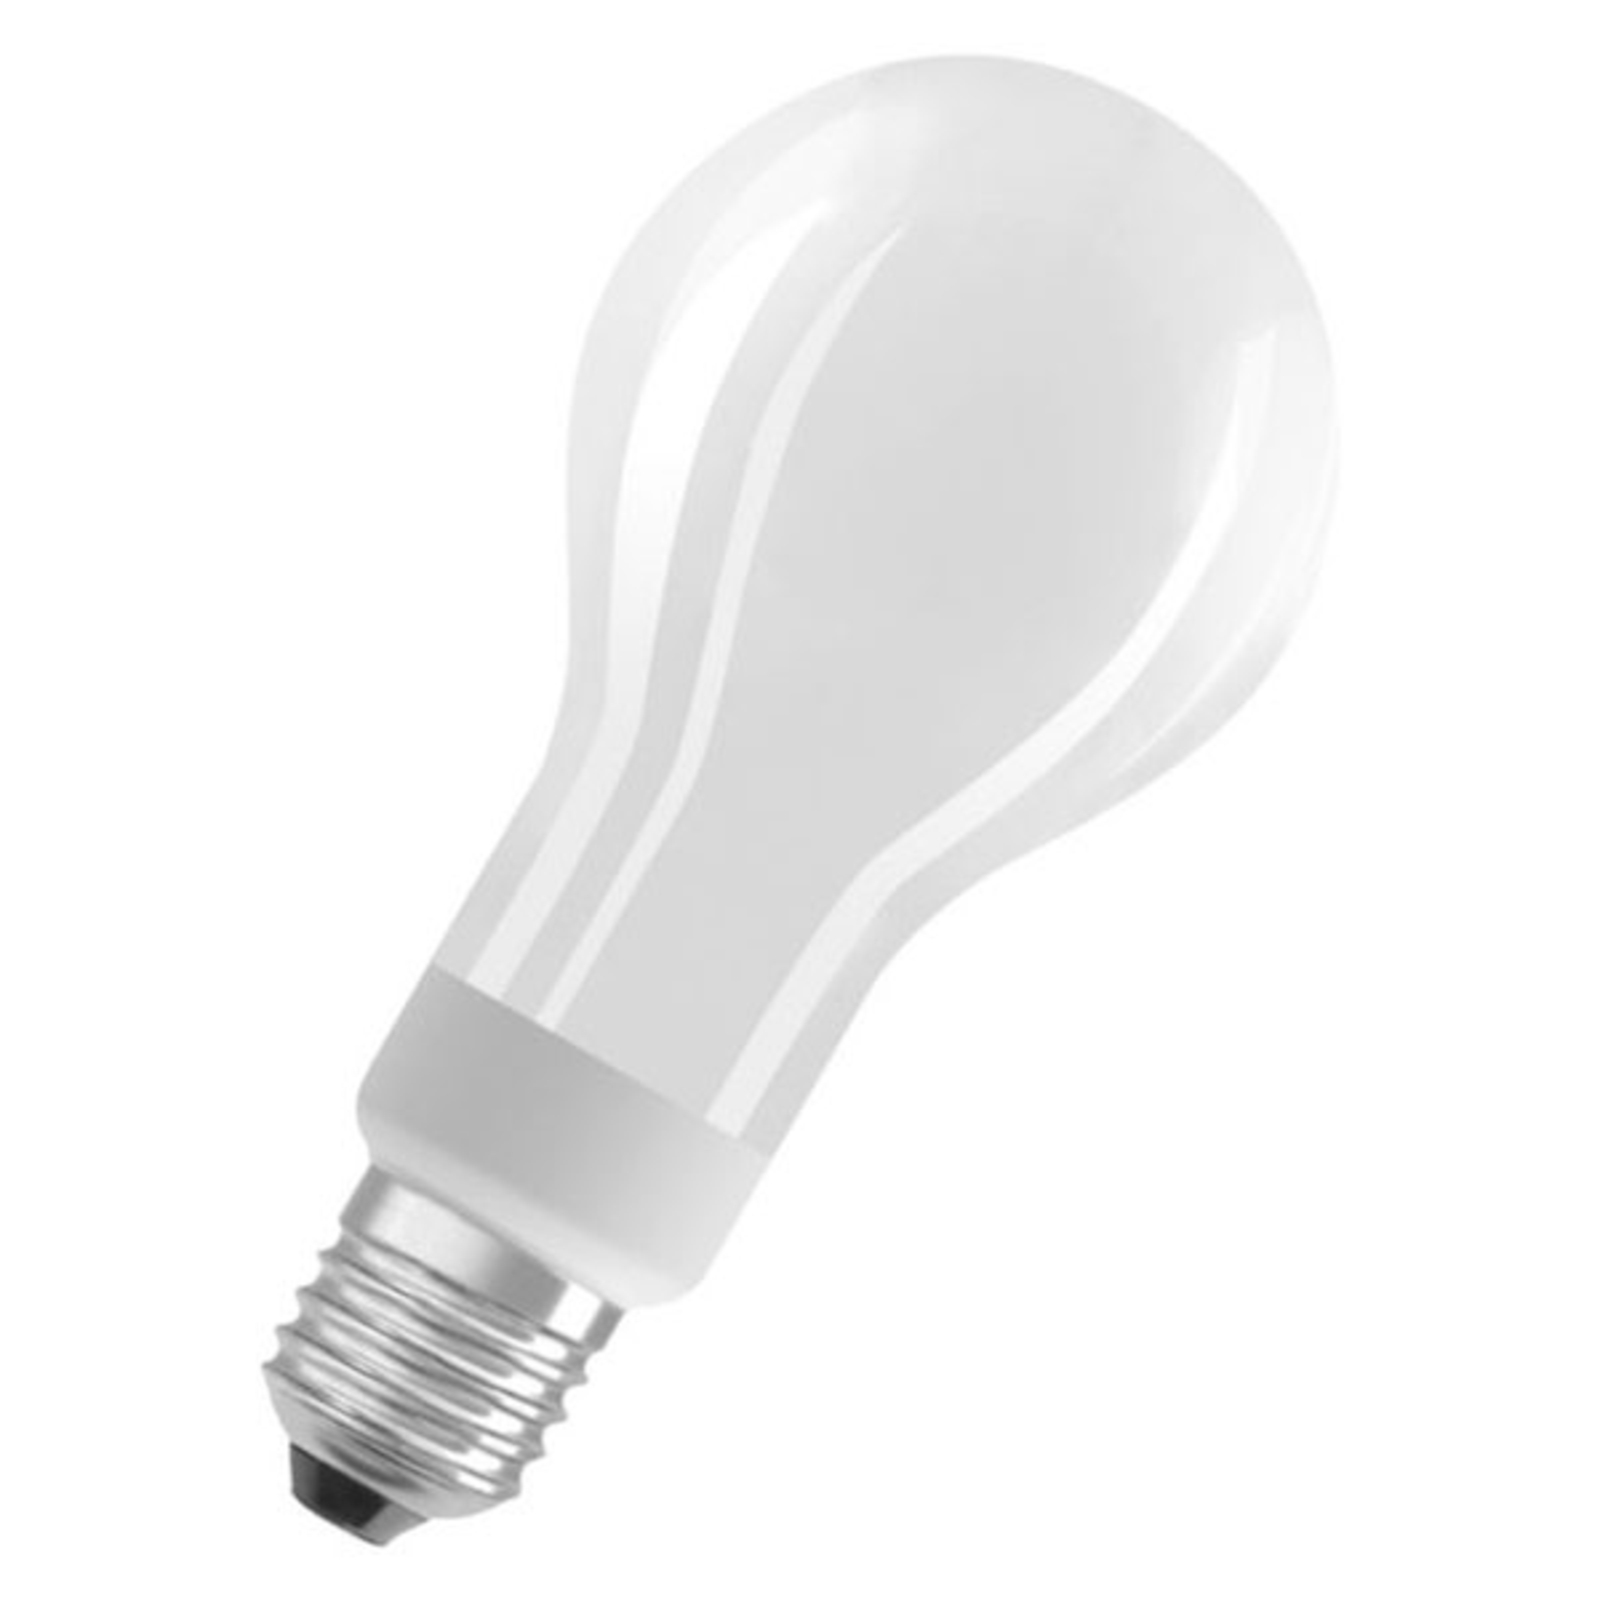 Opknappen condoom Inspecteur OSRAM Superstar LED lamp E27 18W 2.700K dimbaar | Lampen24.nl